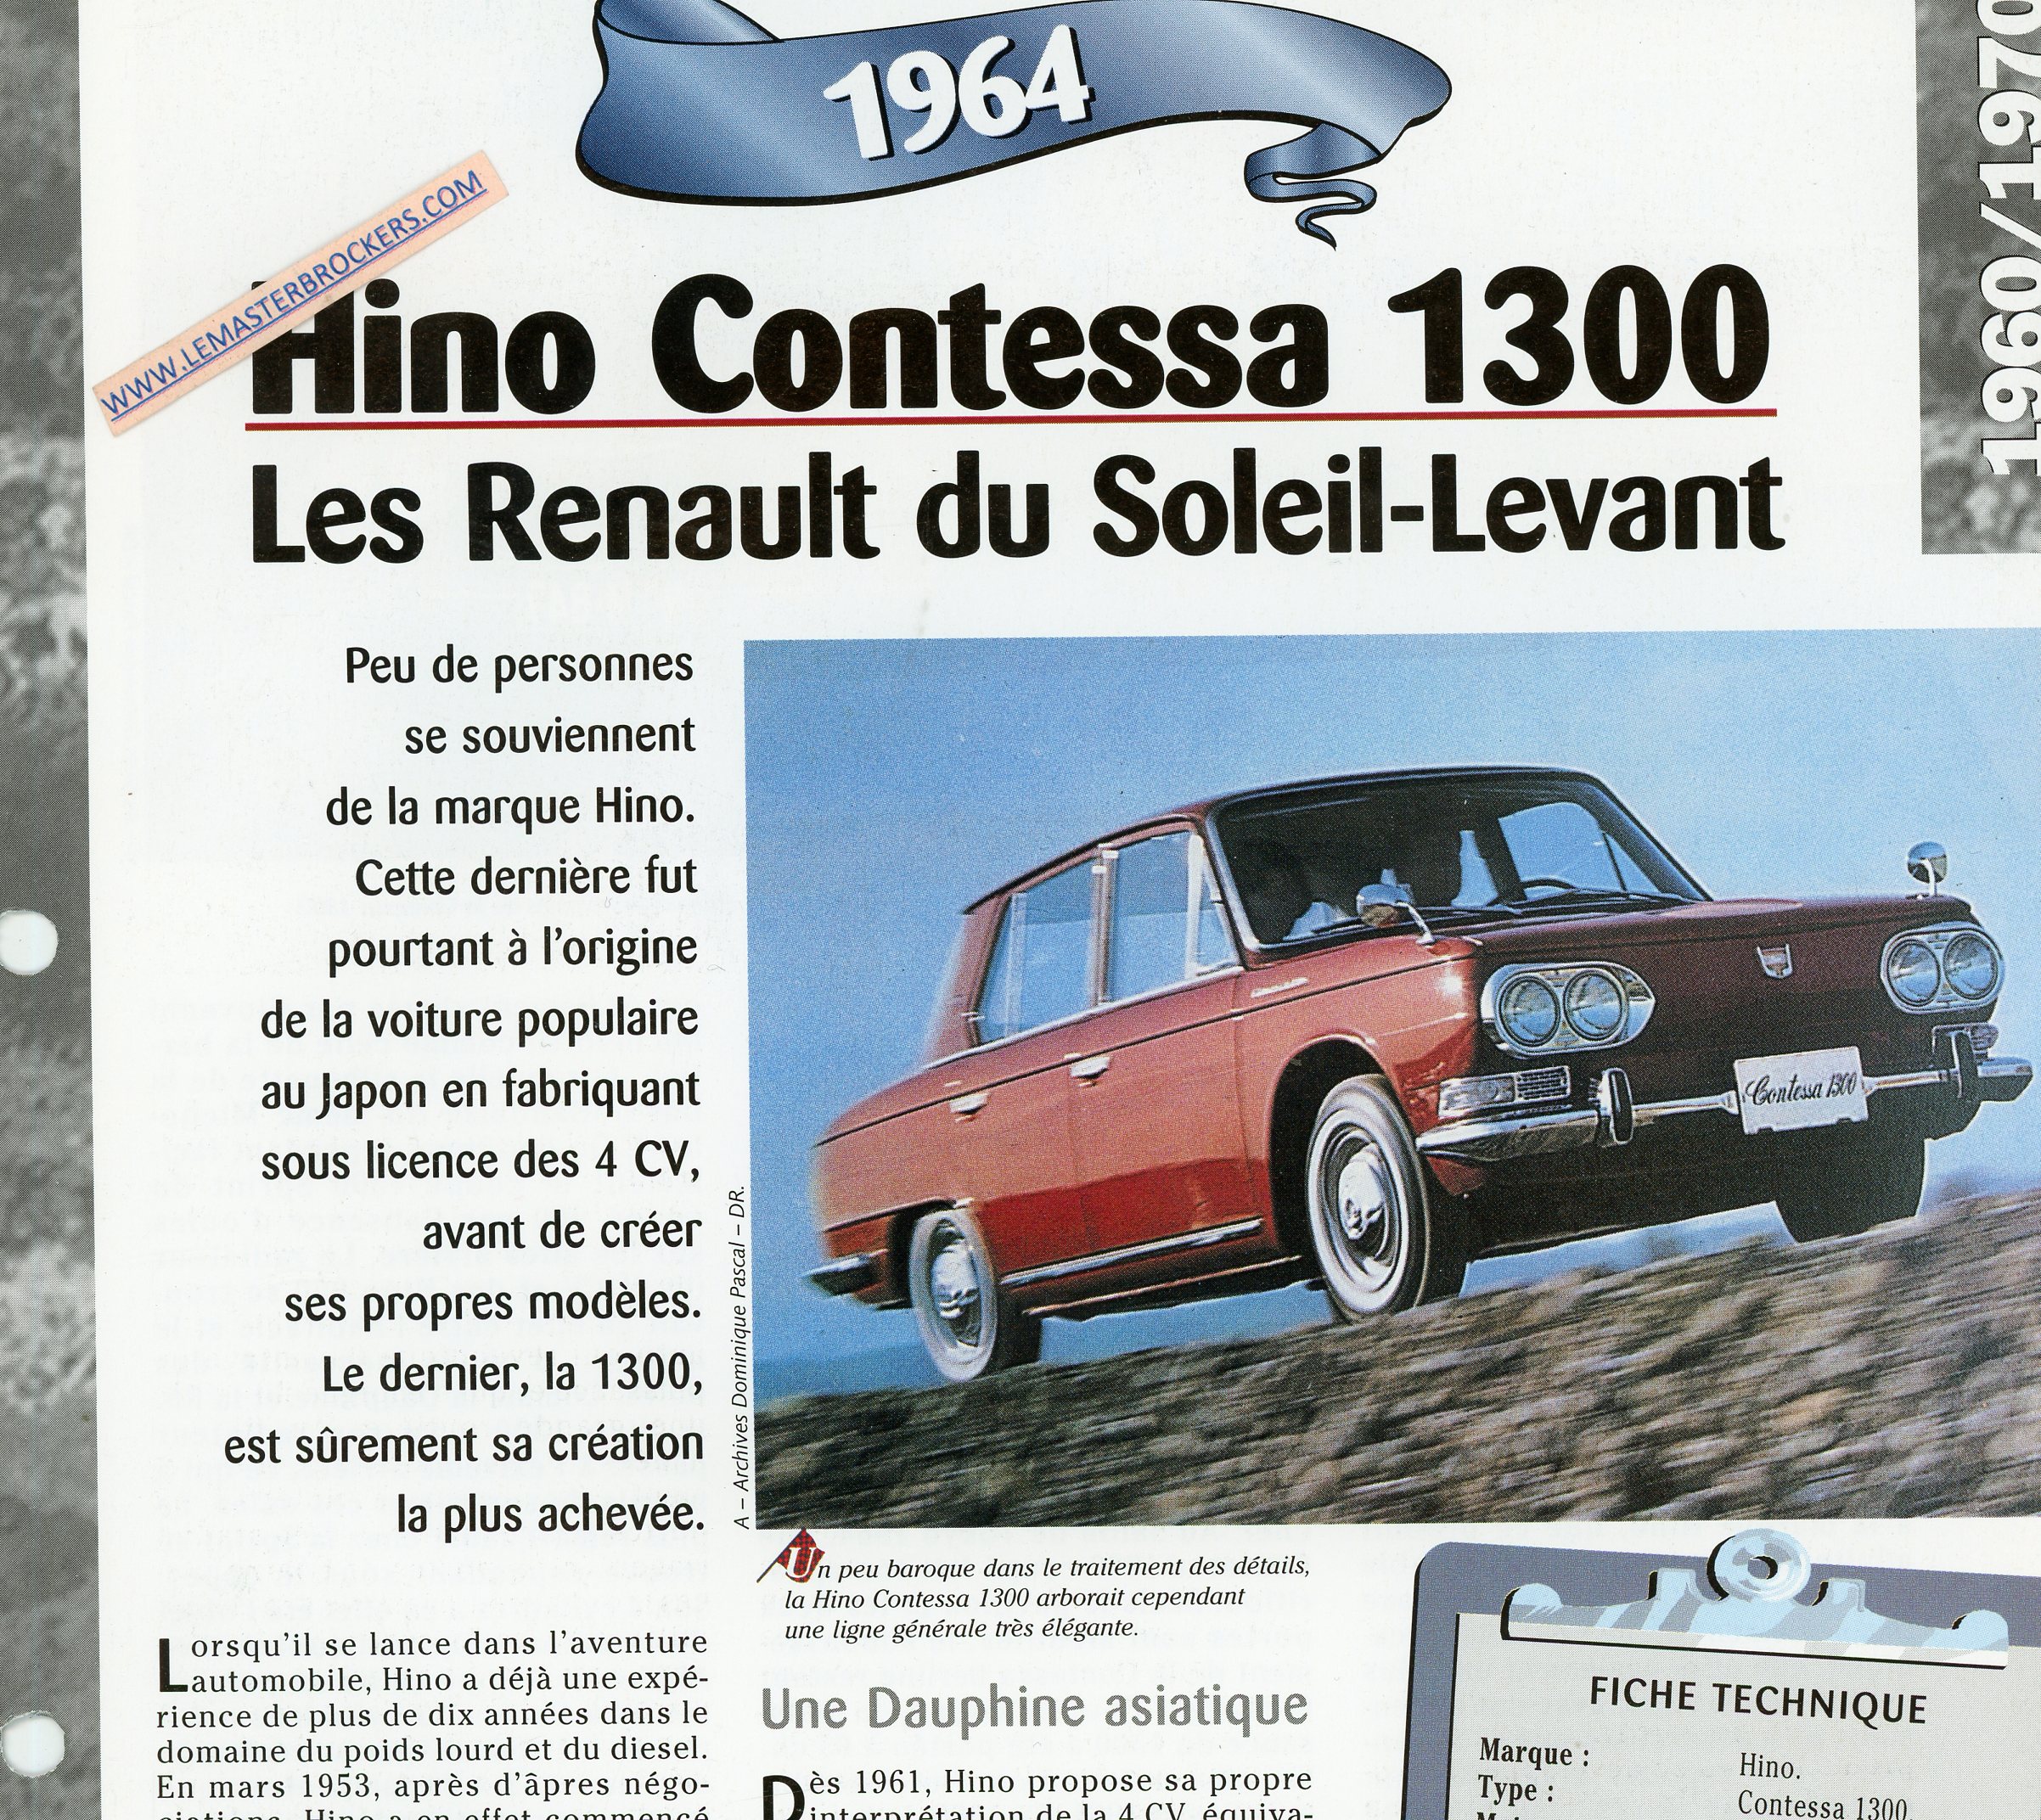 HINO-CONTESSA-1300-1964-FICHE-TECHNIQUE-LEMASTERBROCKERS